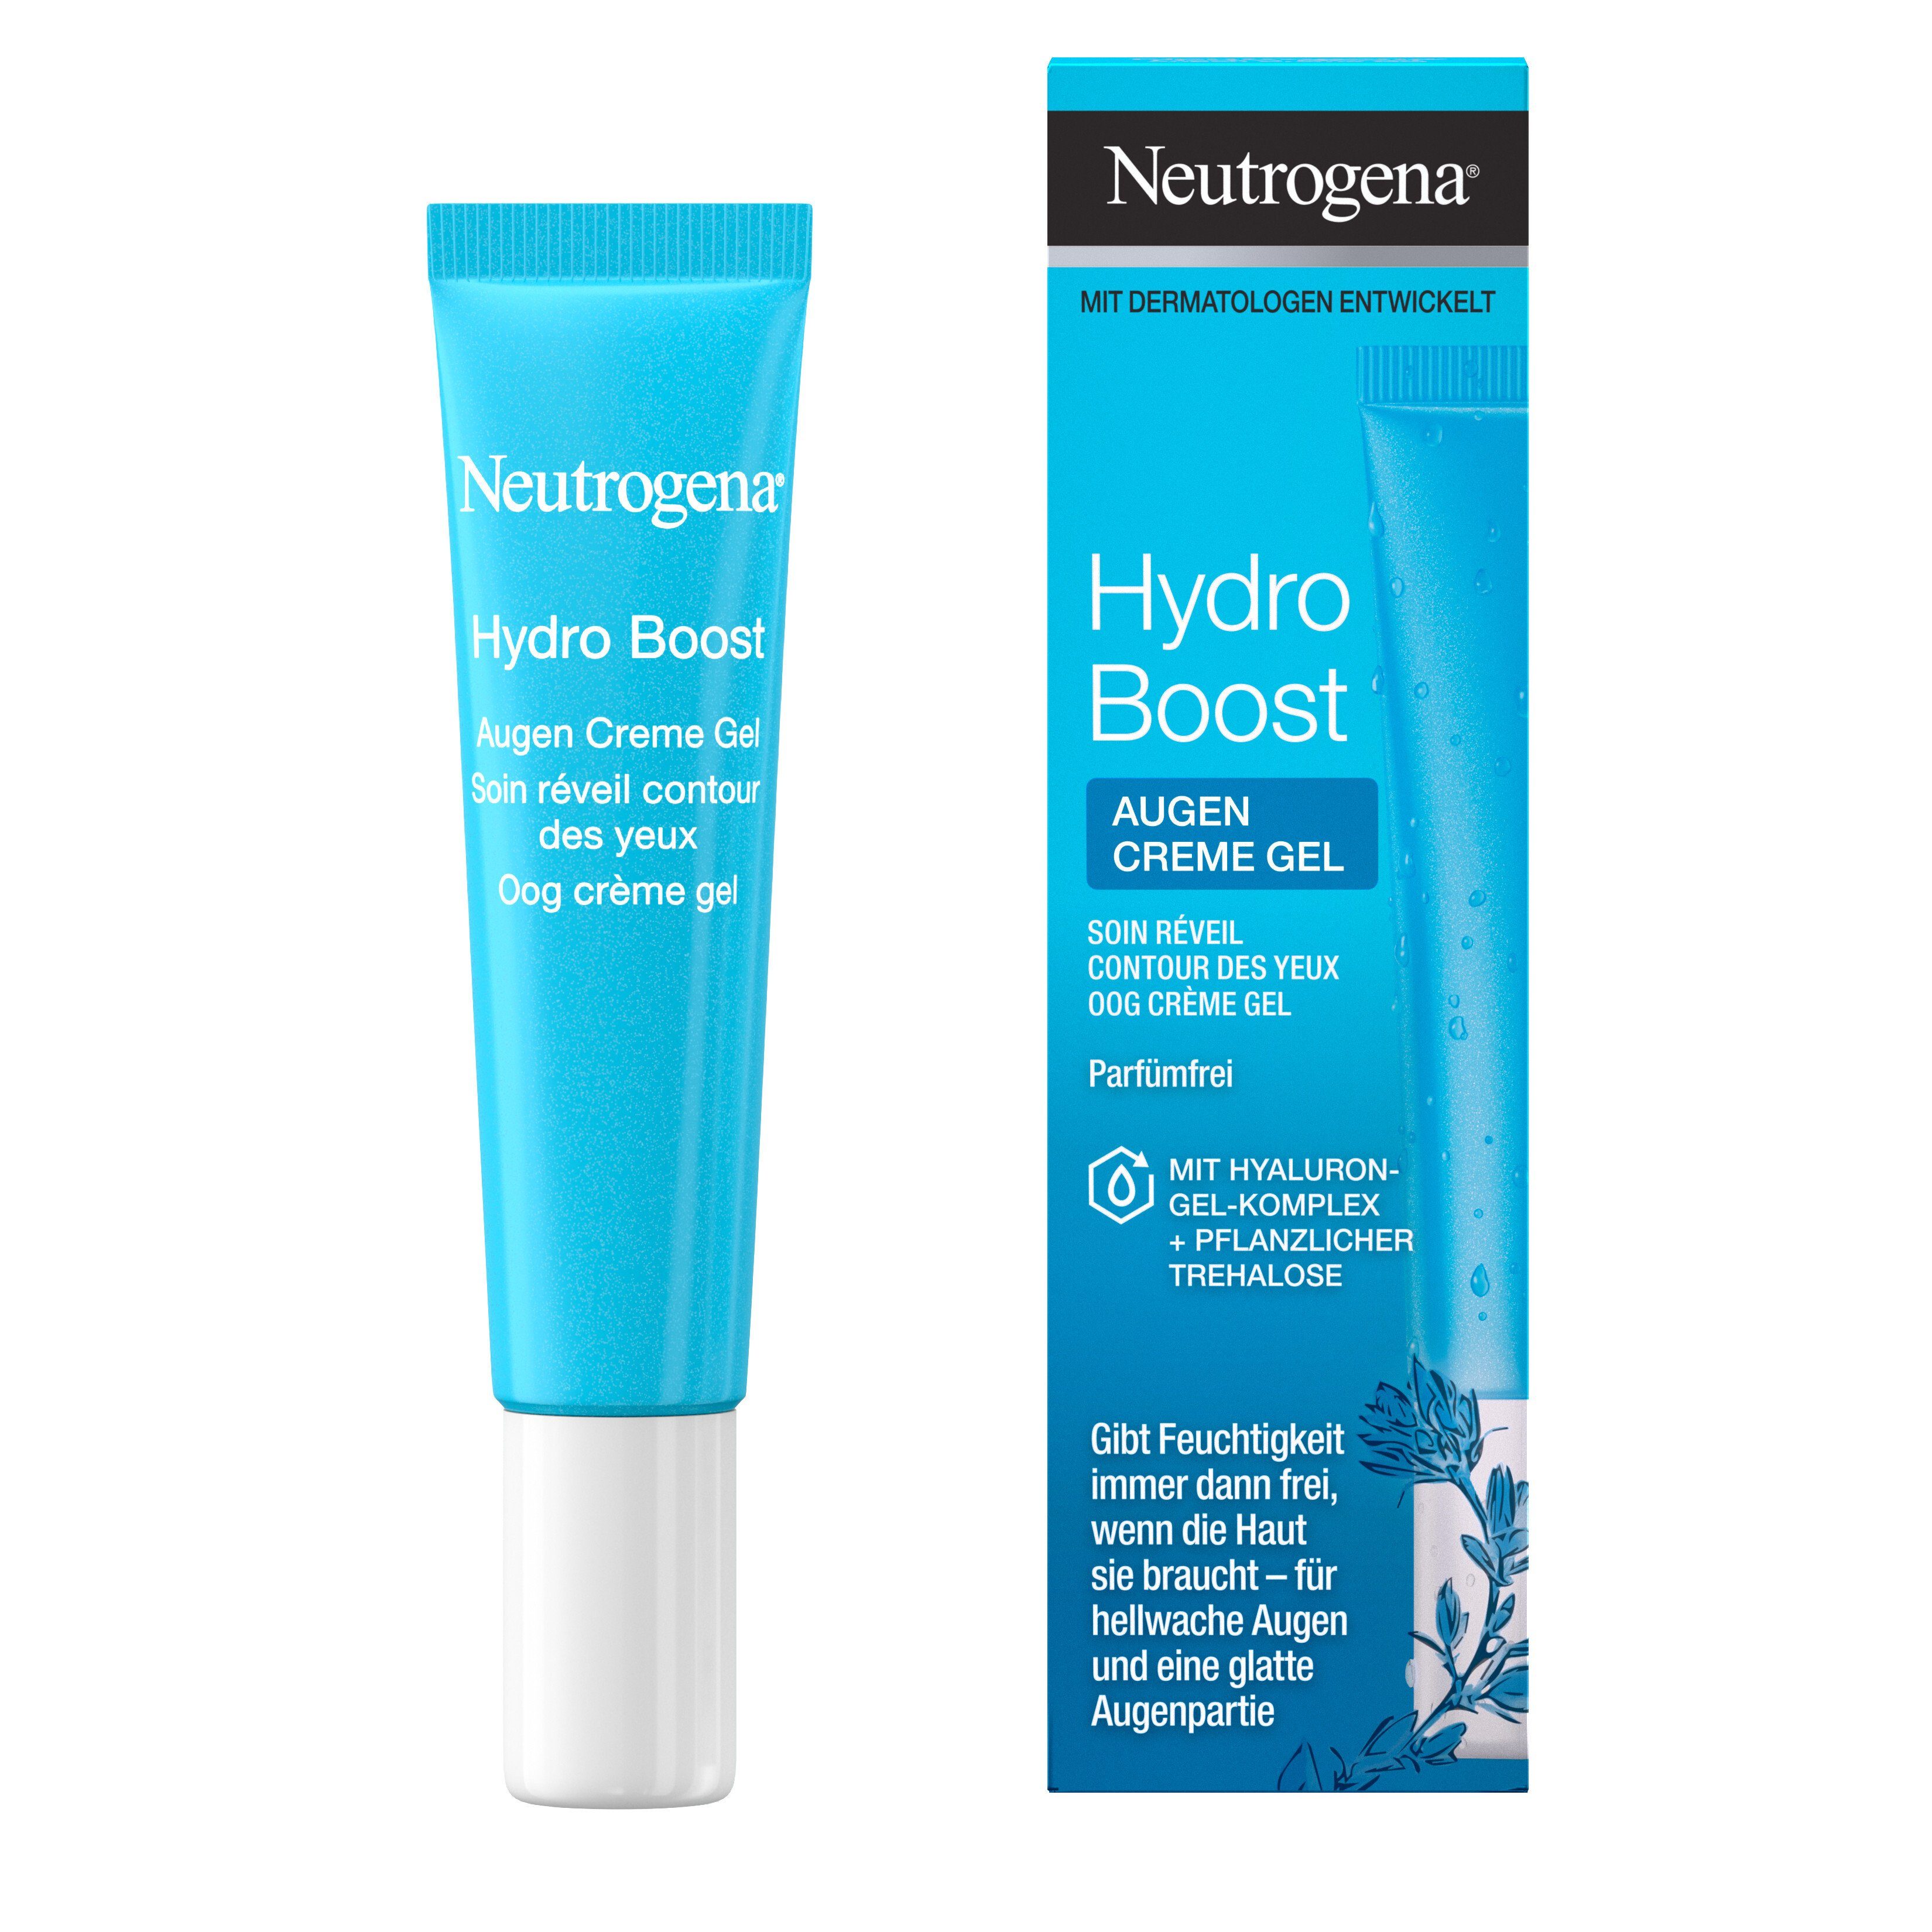 Neutrogena Neutrogena 6er-Pack Augen (6x Creme 15ml) Nachtcreme Gel Belebendes Boost Hydro